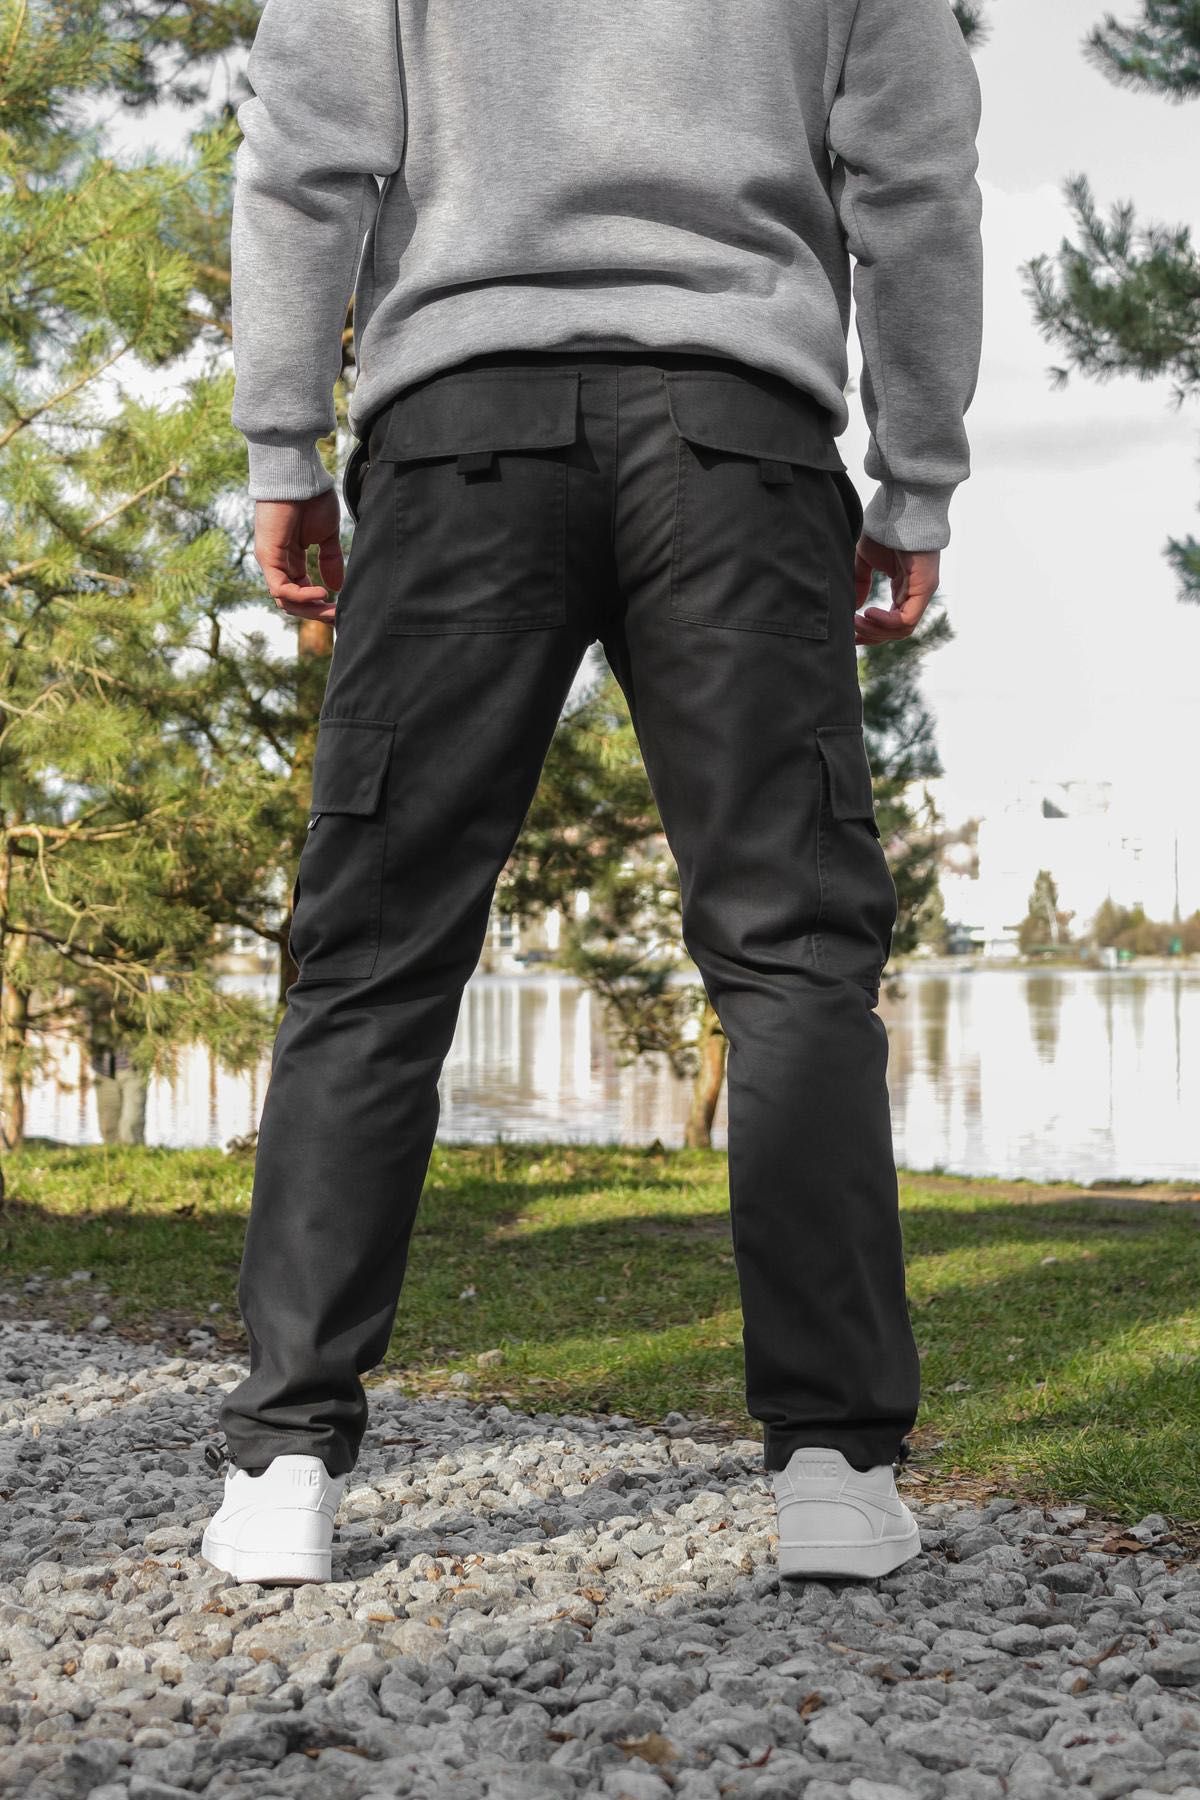 Мужские штаны карго джоггеры спортивные чоловічі штани спортивні джоге